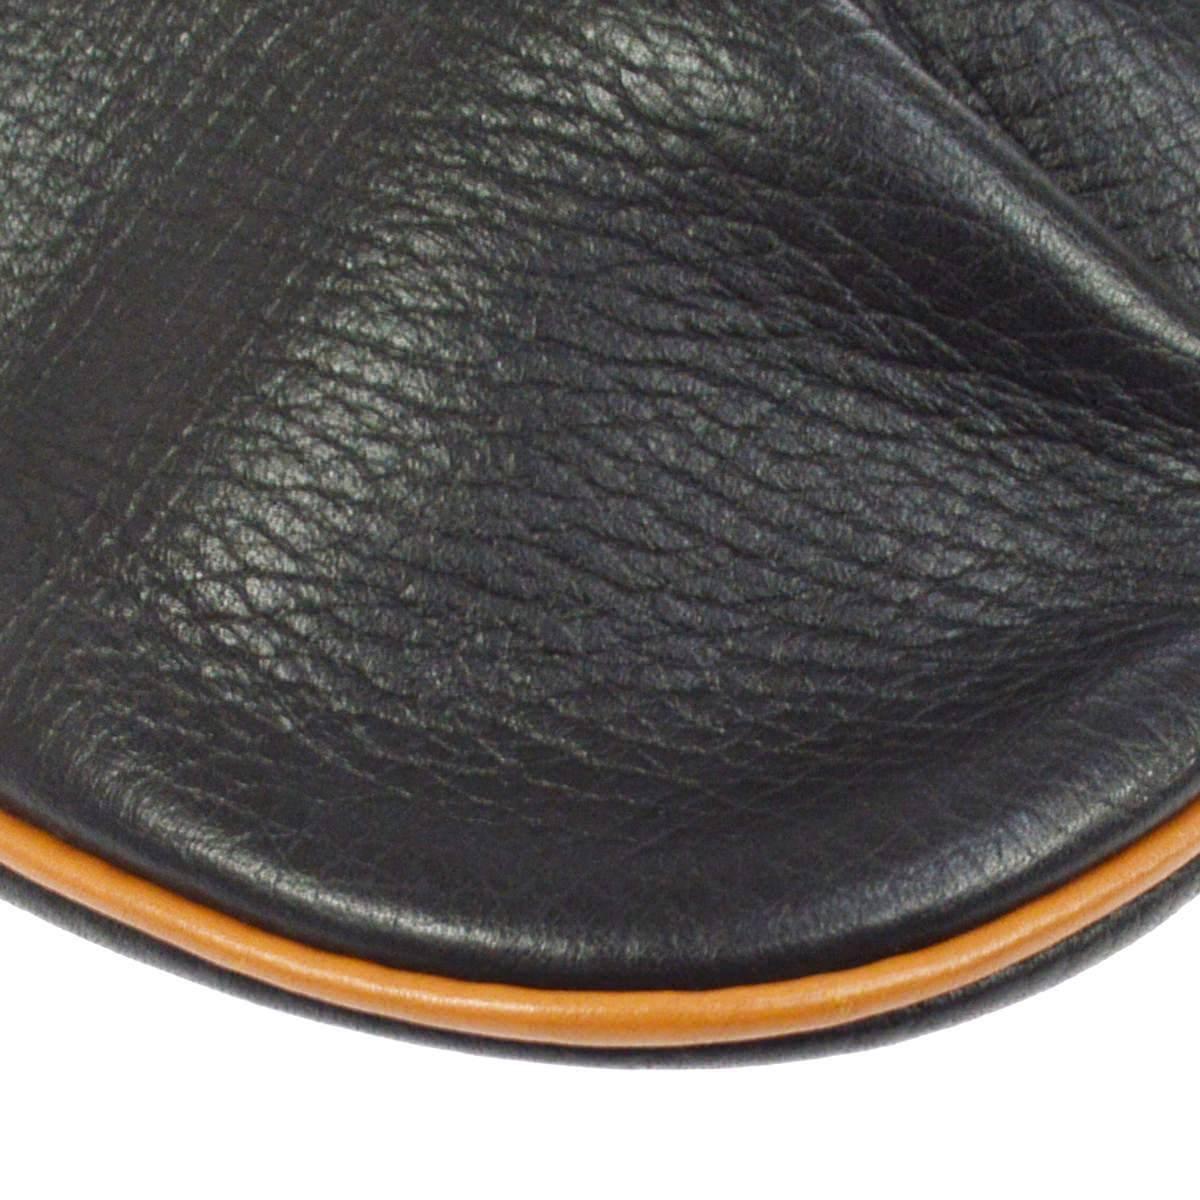 Hermes Black Cognac Leather Hobo Style Shoulder Crossbody Saddle Bag 2